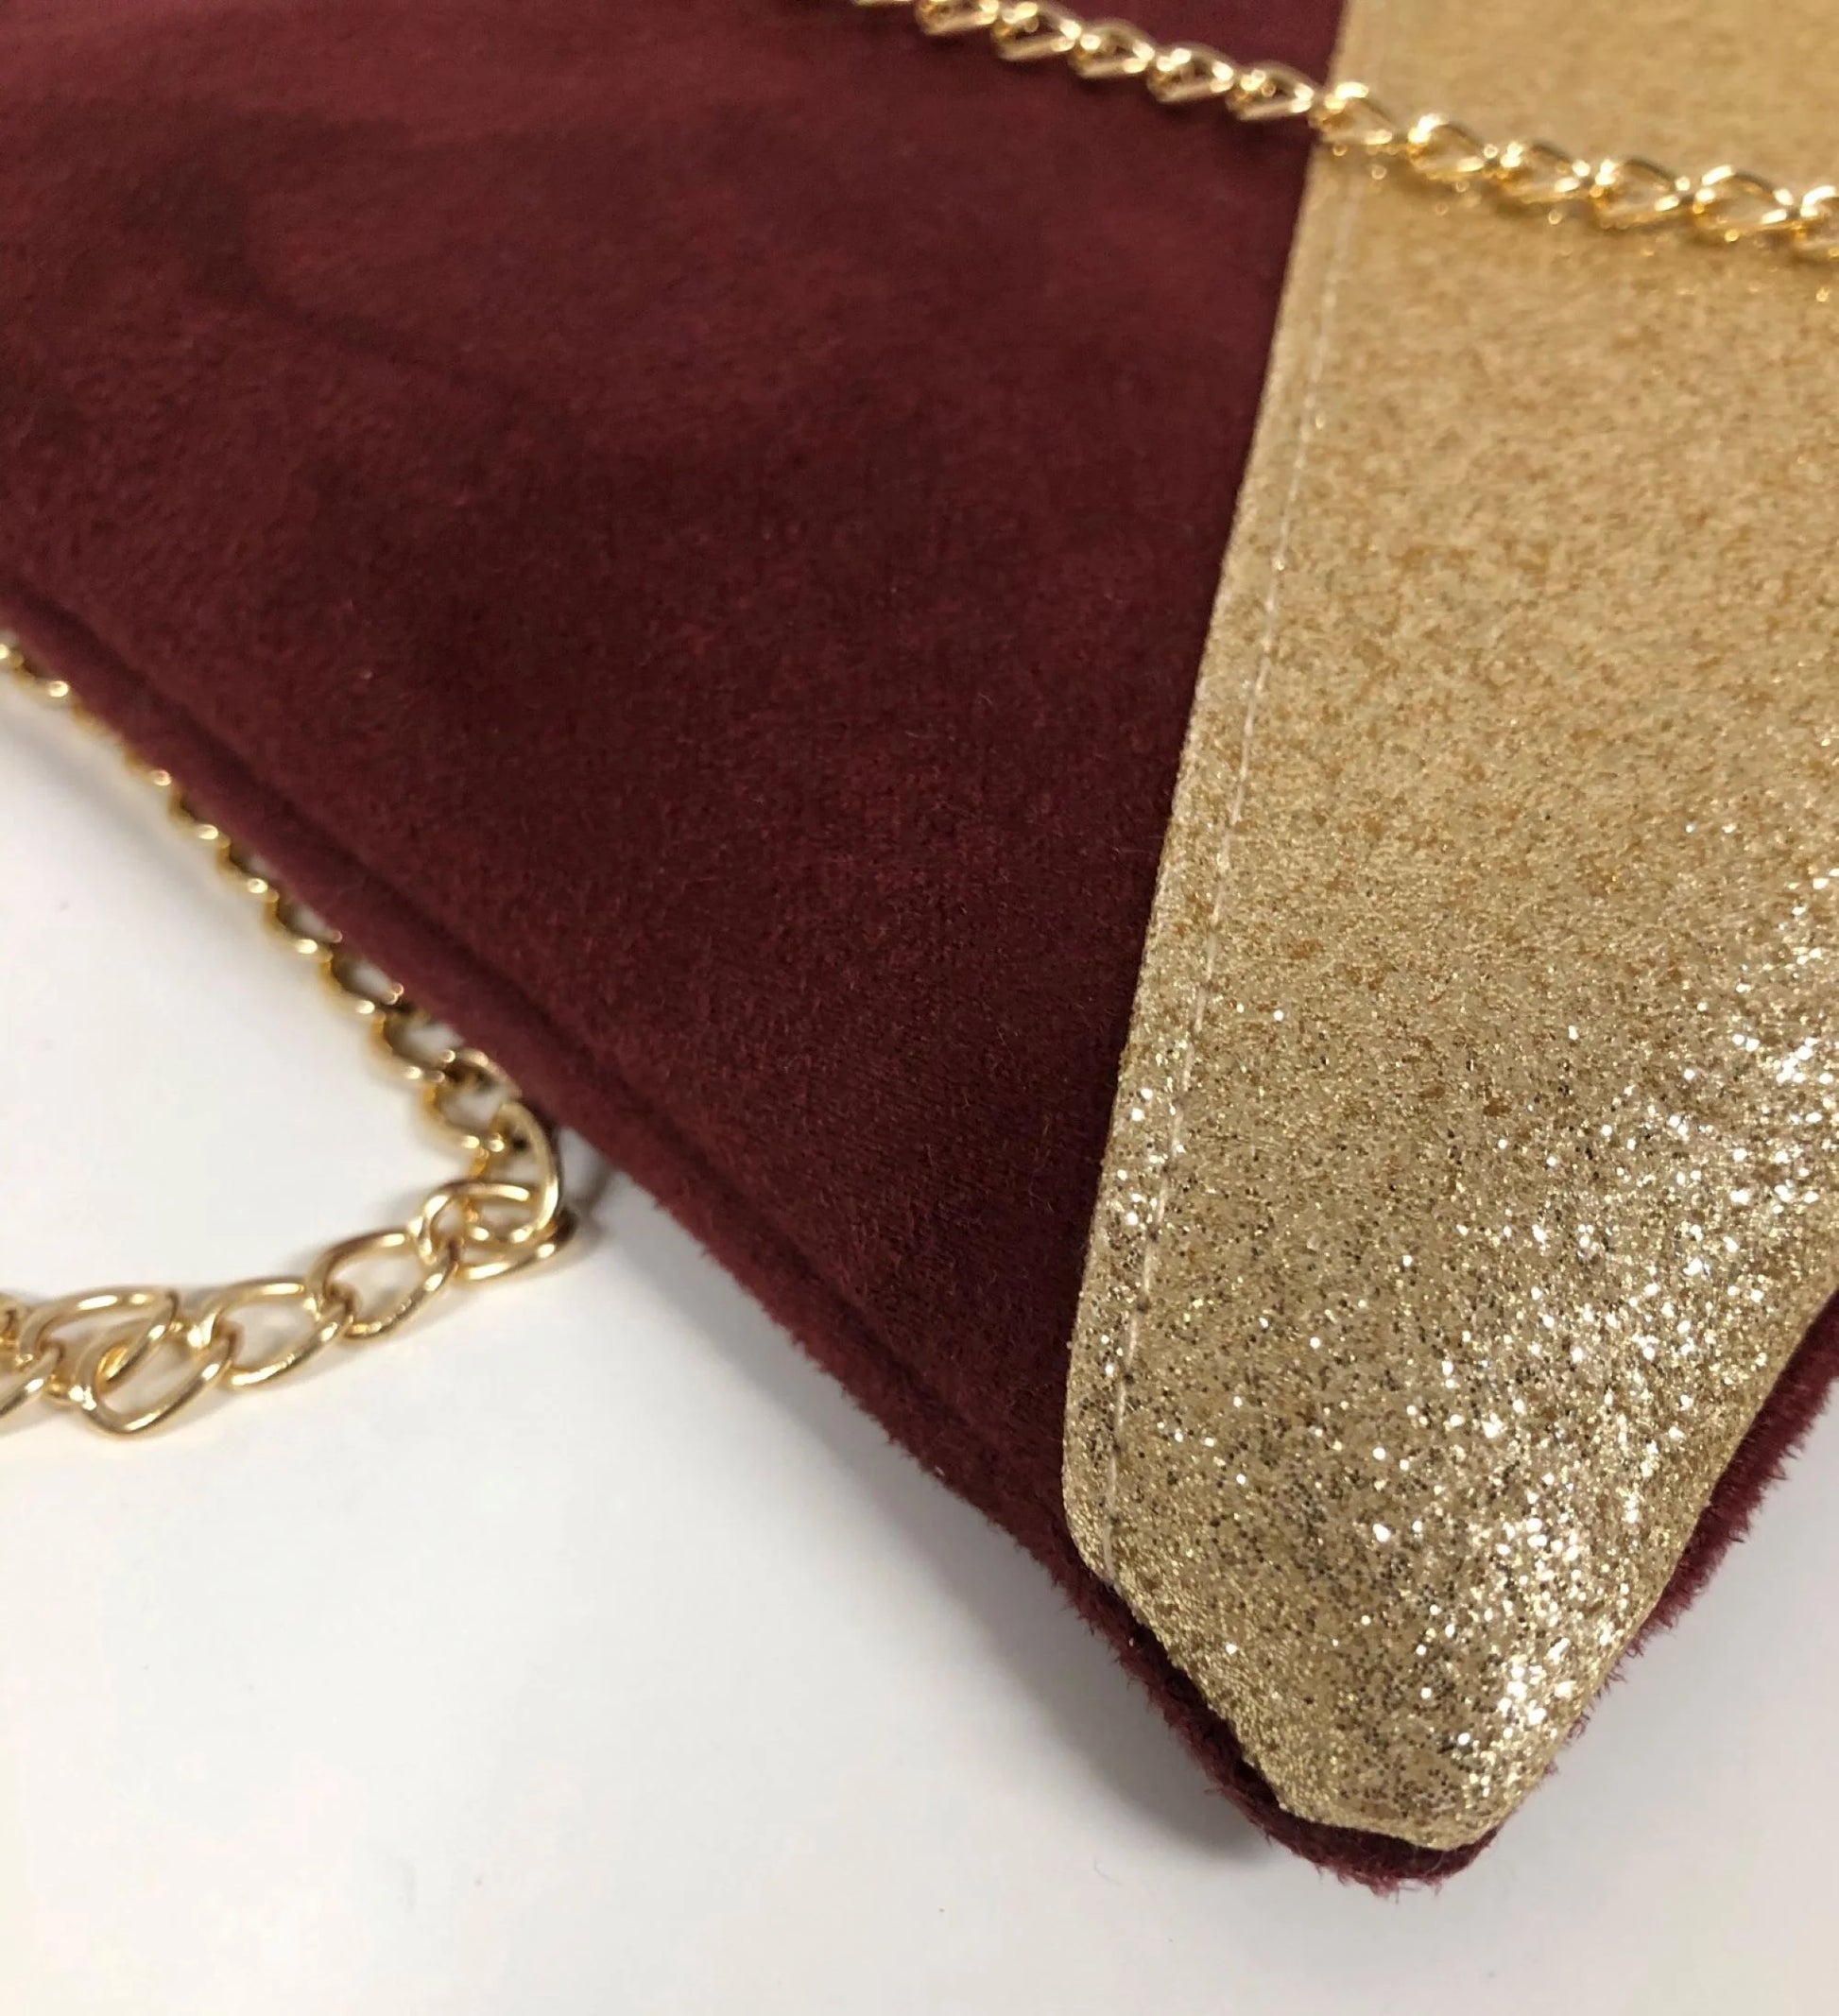 Vue détaillée du sac pochette Isa bordeaux à paillettes dorées.